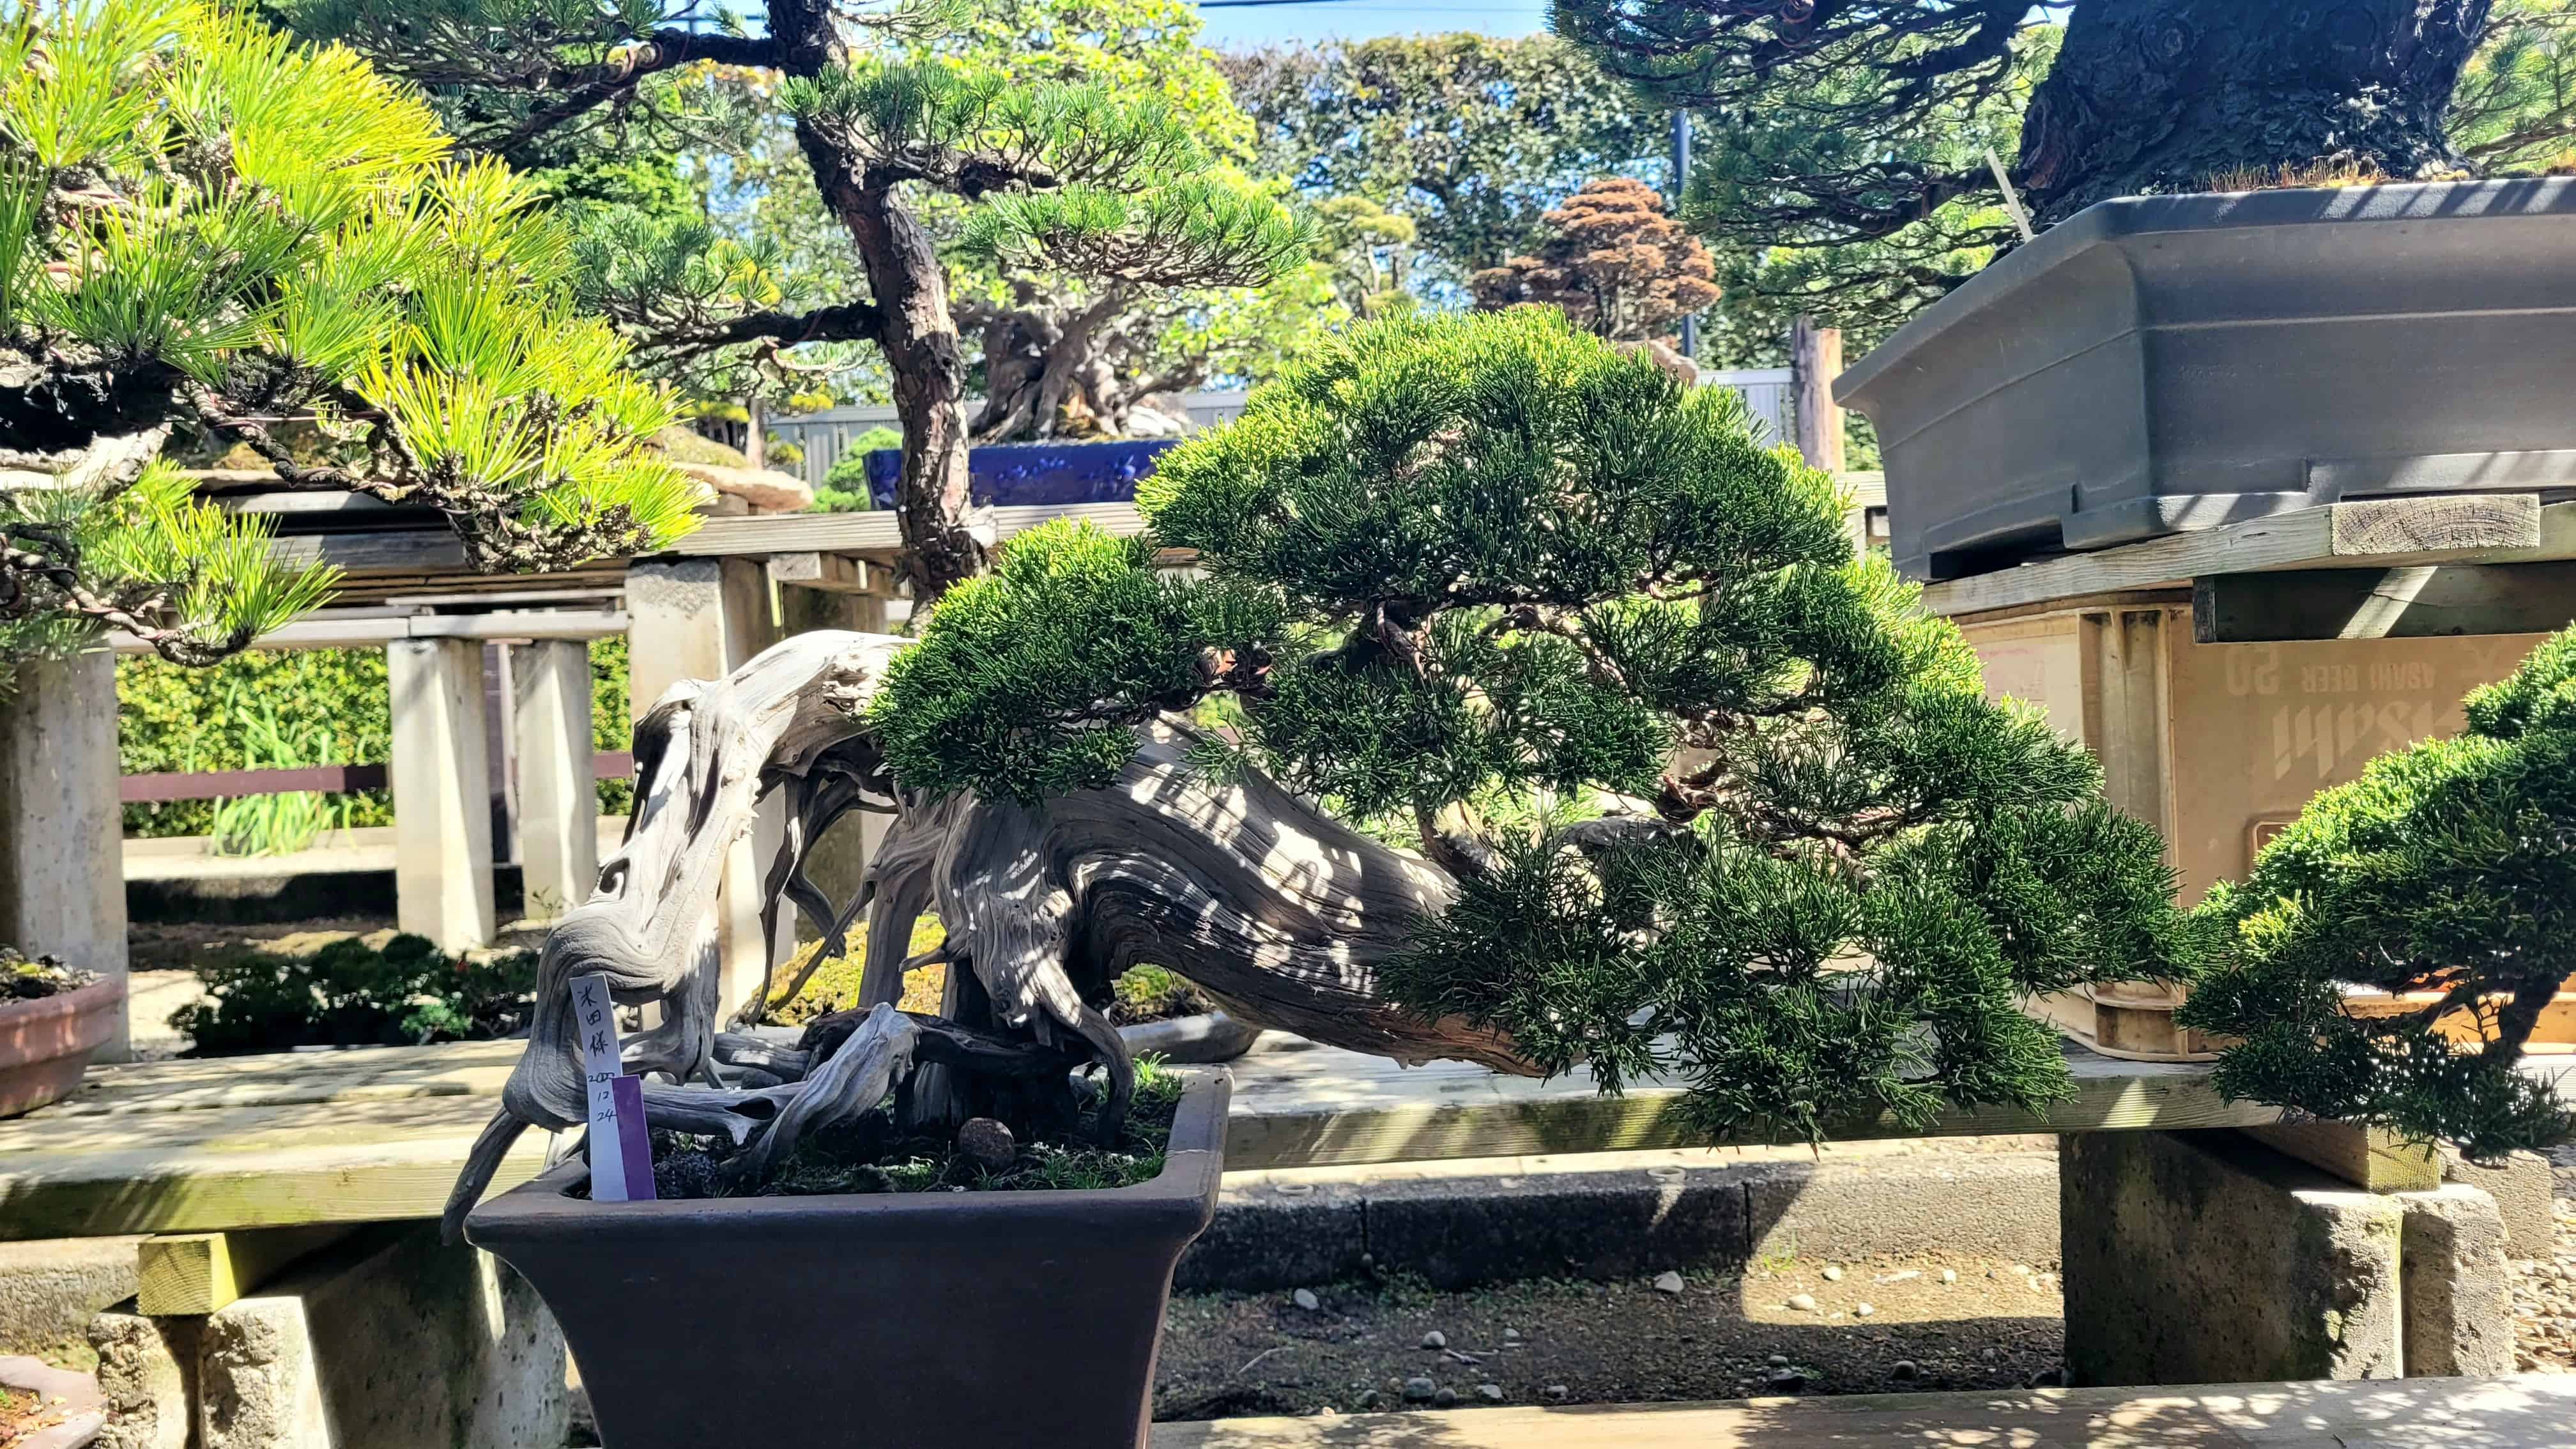 A juniper bonsai tree from kimura in Japan